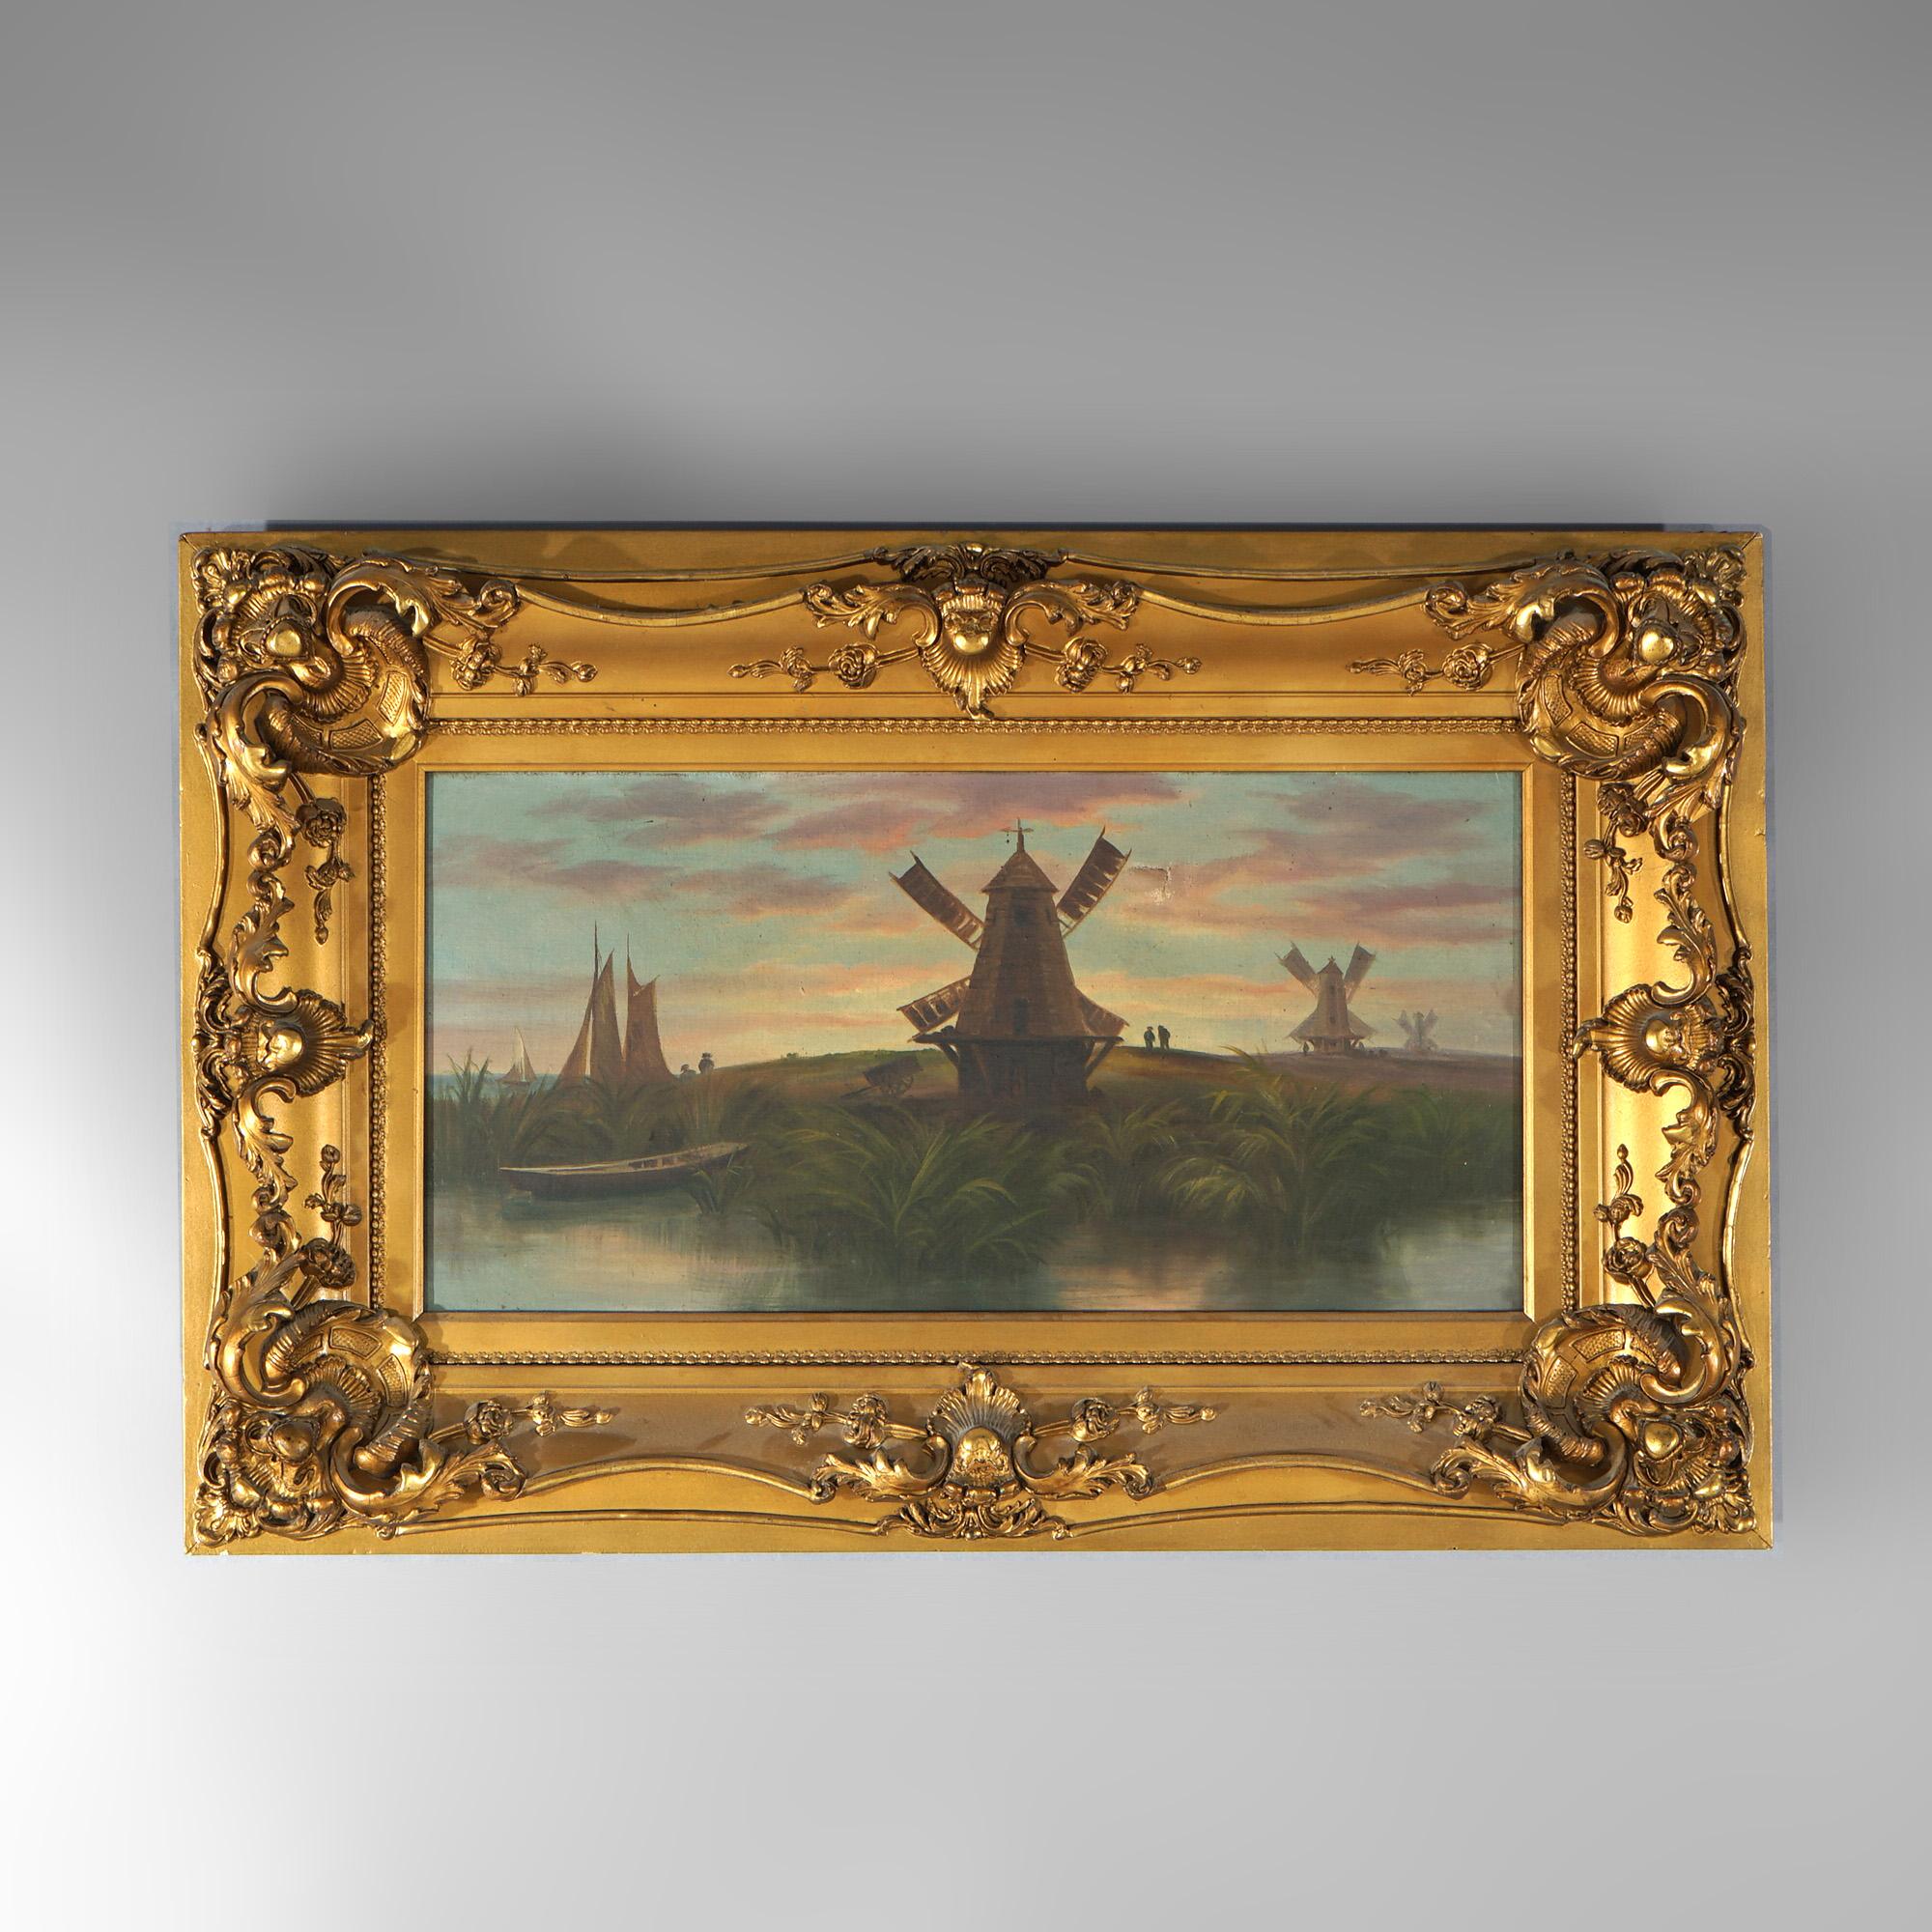 Ein altes holländisches Gemälde bietet Öl auf Leinwand Landschaftsszene mit Windmühlen, Wasserstraße und Boote, in Goldholzrahmen, c1890 gesetzt

Maße - insgesamt 21,75 